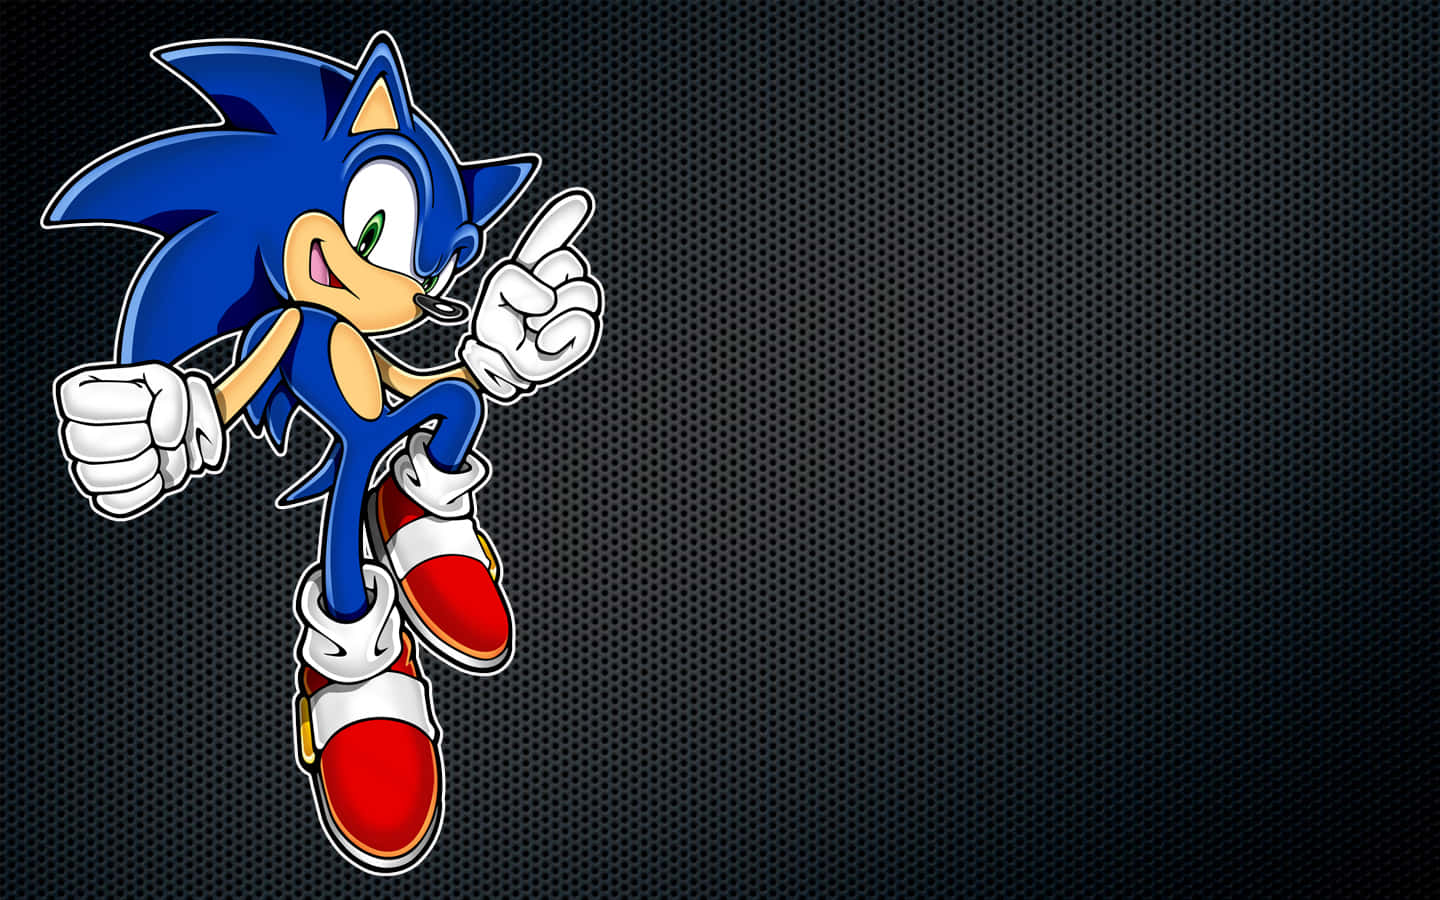 Elerizo Sonic, El Erizo Sonic, El Erizo Sonic, El Erizo Sonic, El Erizo Sonic